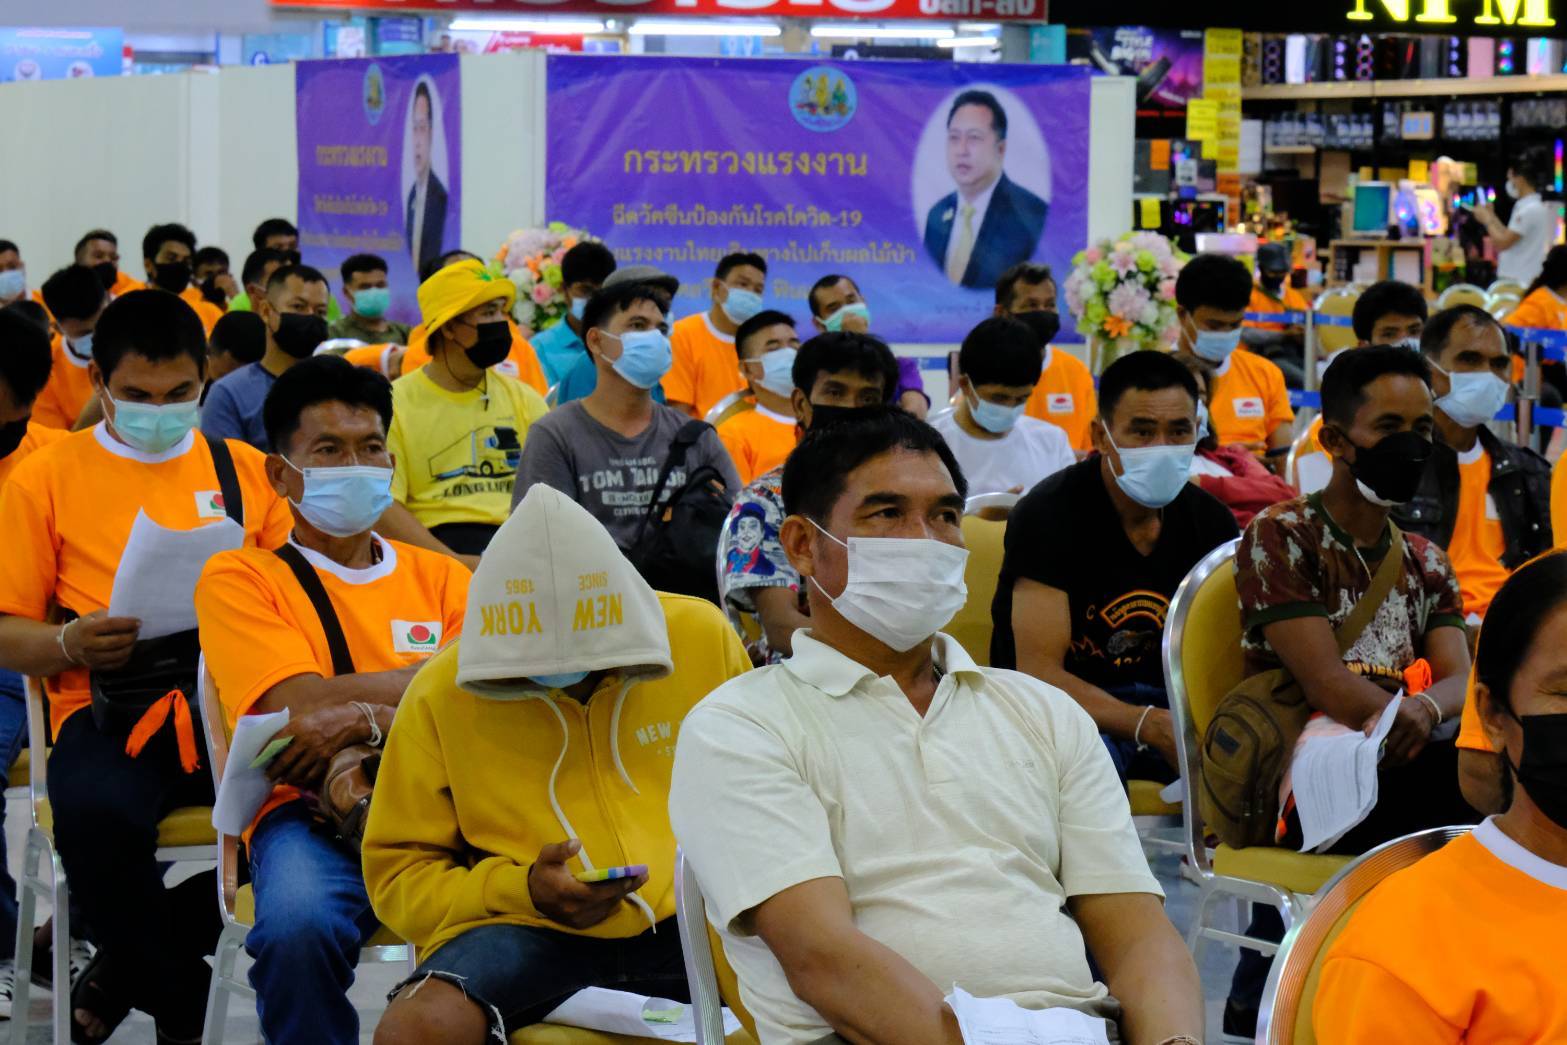 ไทยเดินหน้าฉีดวัคซีนแรงงานไทย พร้อมตรวจโควิดก่อนไปยุโรป – สังคม